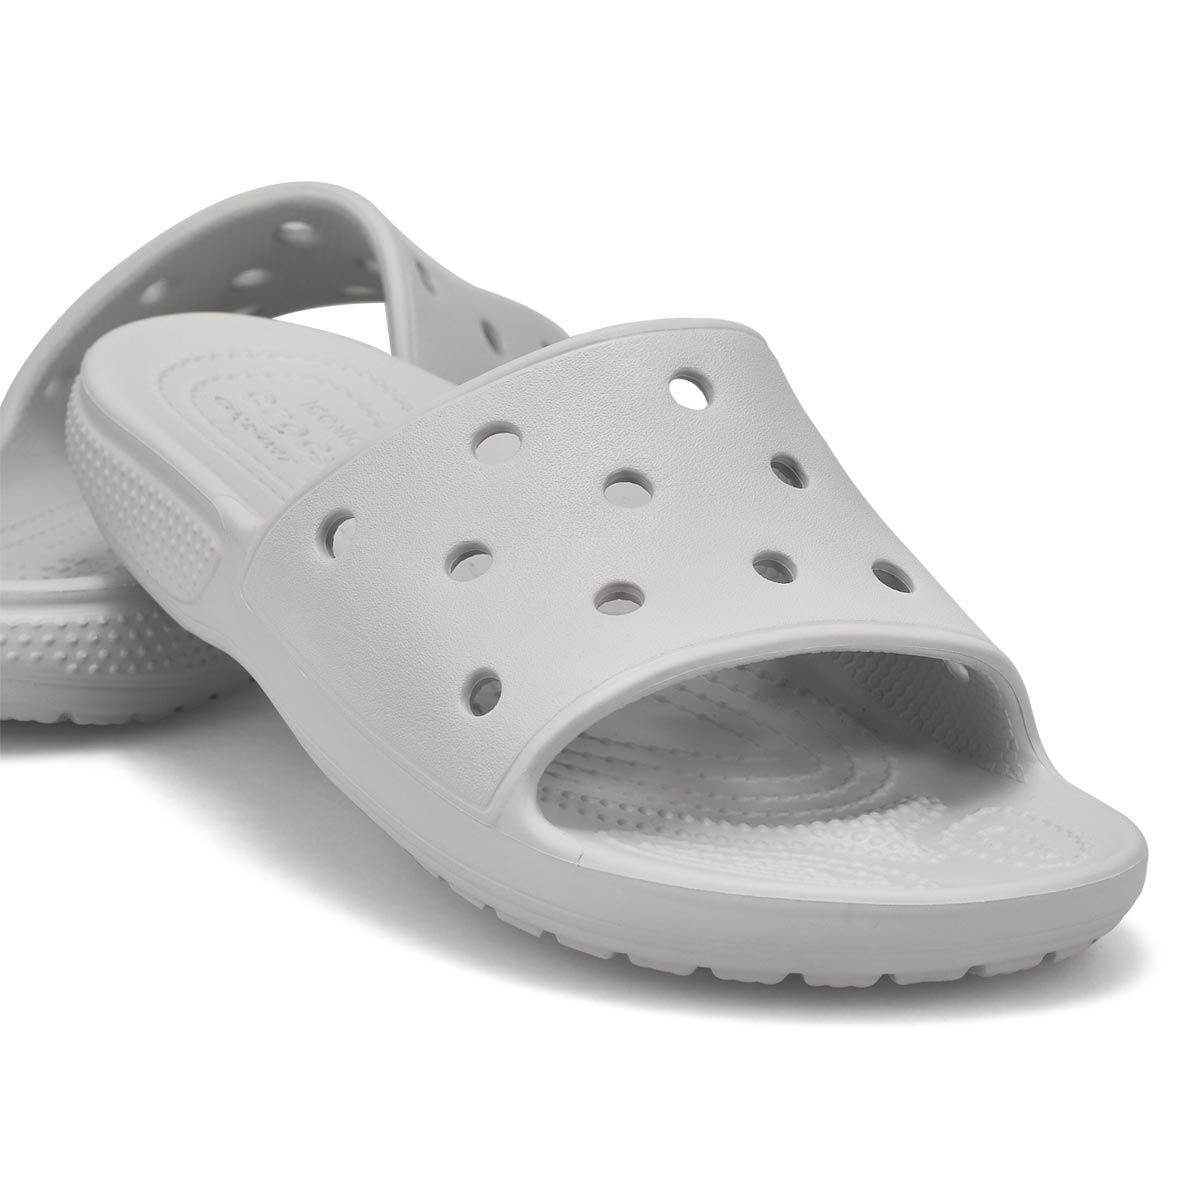 Women's Classic Crocs Slide Sandal